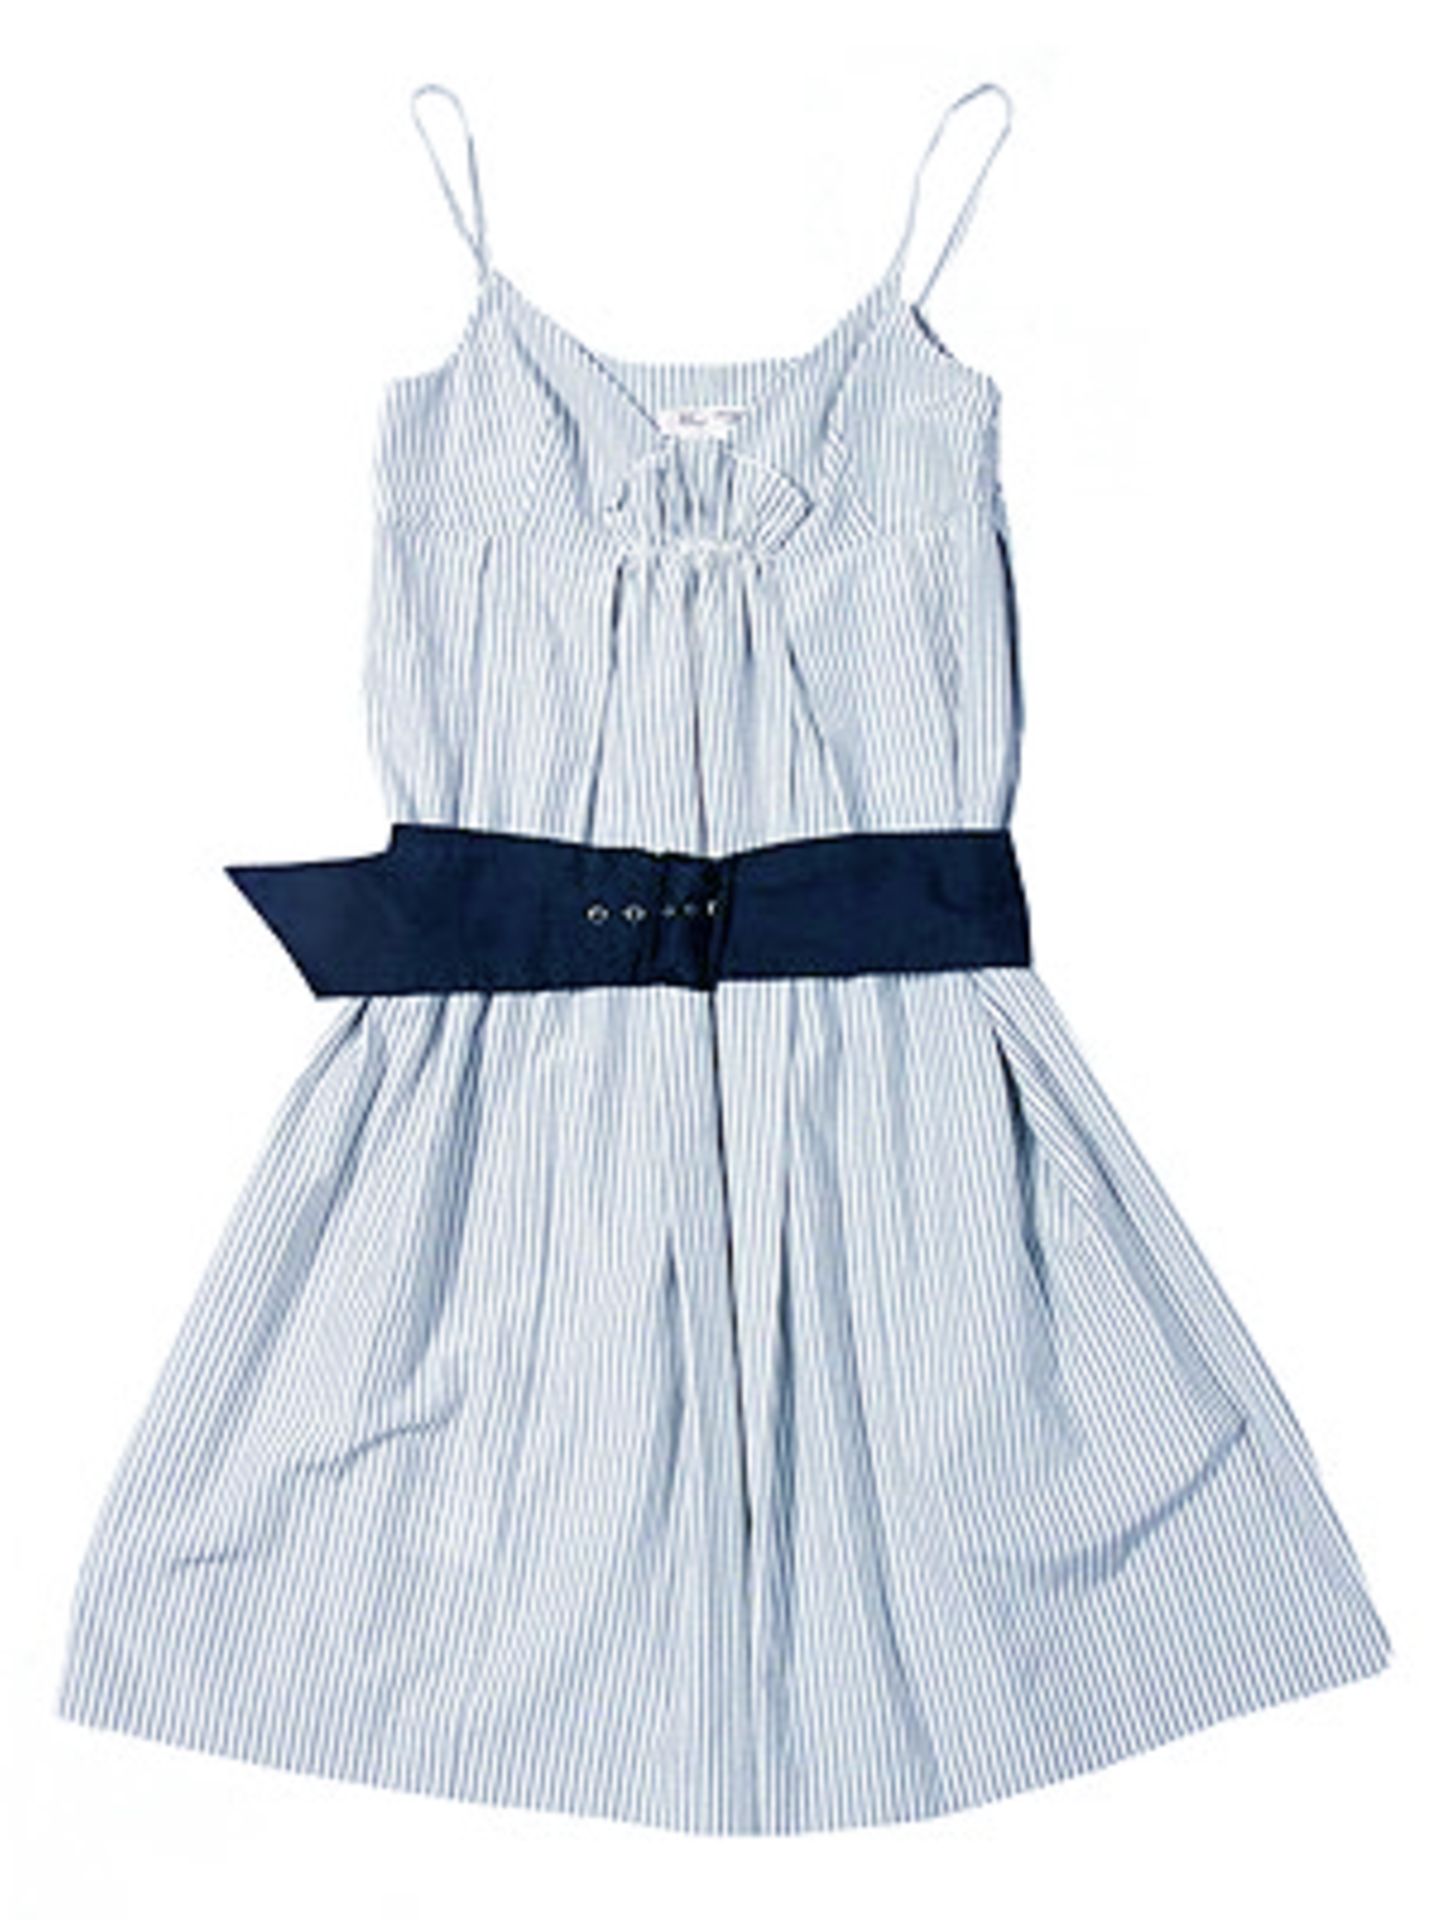 Blau-weiß fein gestreiftes Kleid mit blauem Gürtel; 119 Euro; von Mango